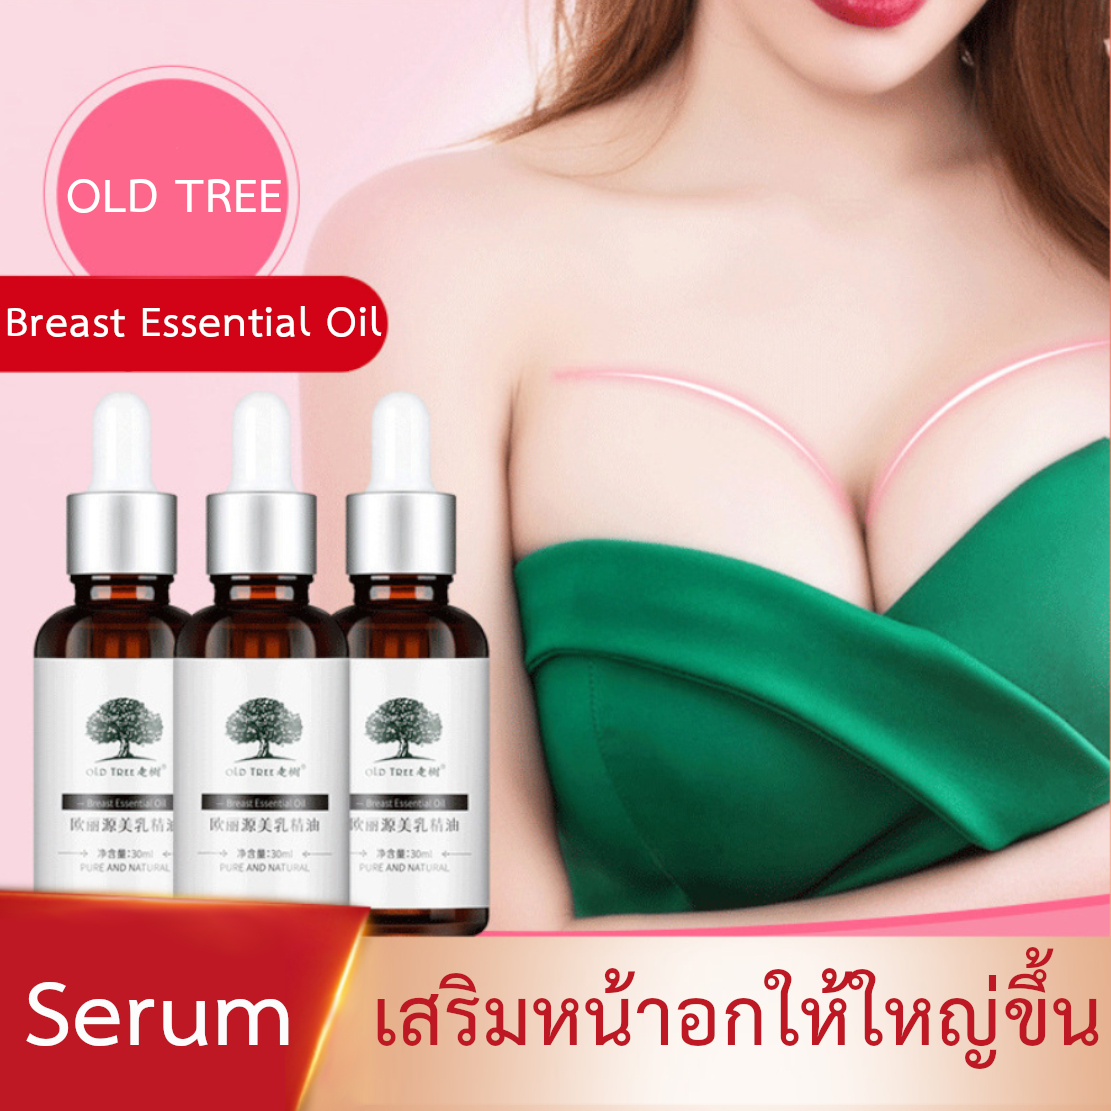 ครีมนมโต เซรั่มเสริมหน้าอก บำรุงหน้าอกให้ใหญ่ขึ้น ขนาด 30ml. (OLD TREE Breast Essentail Oil)